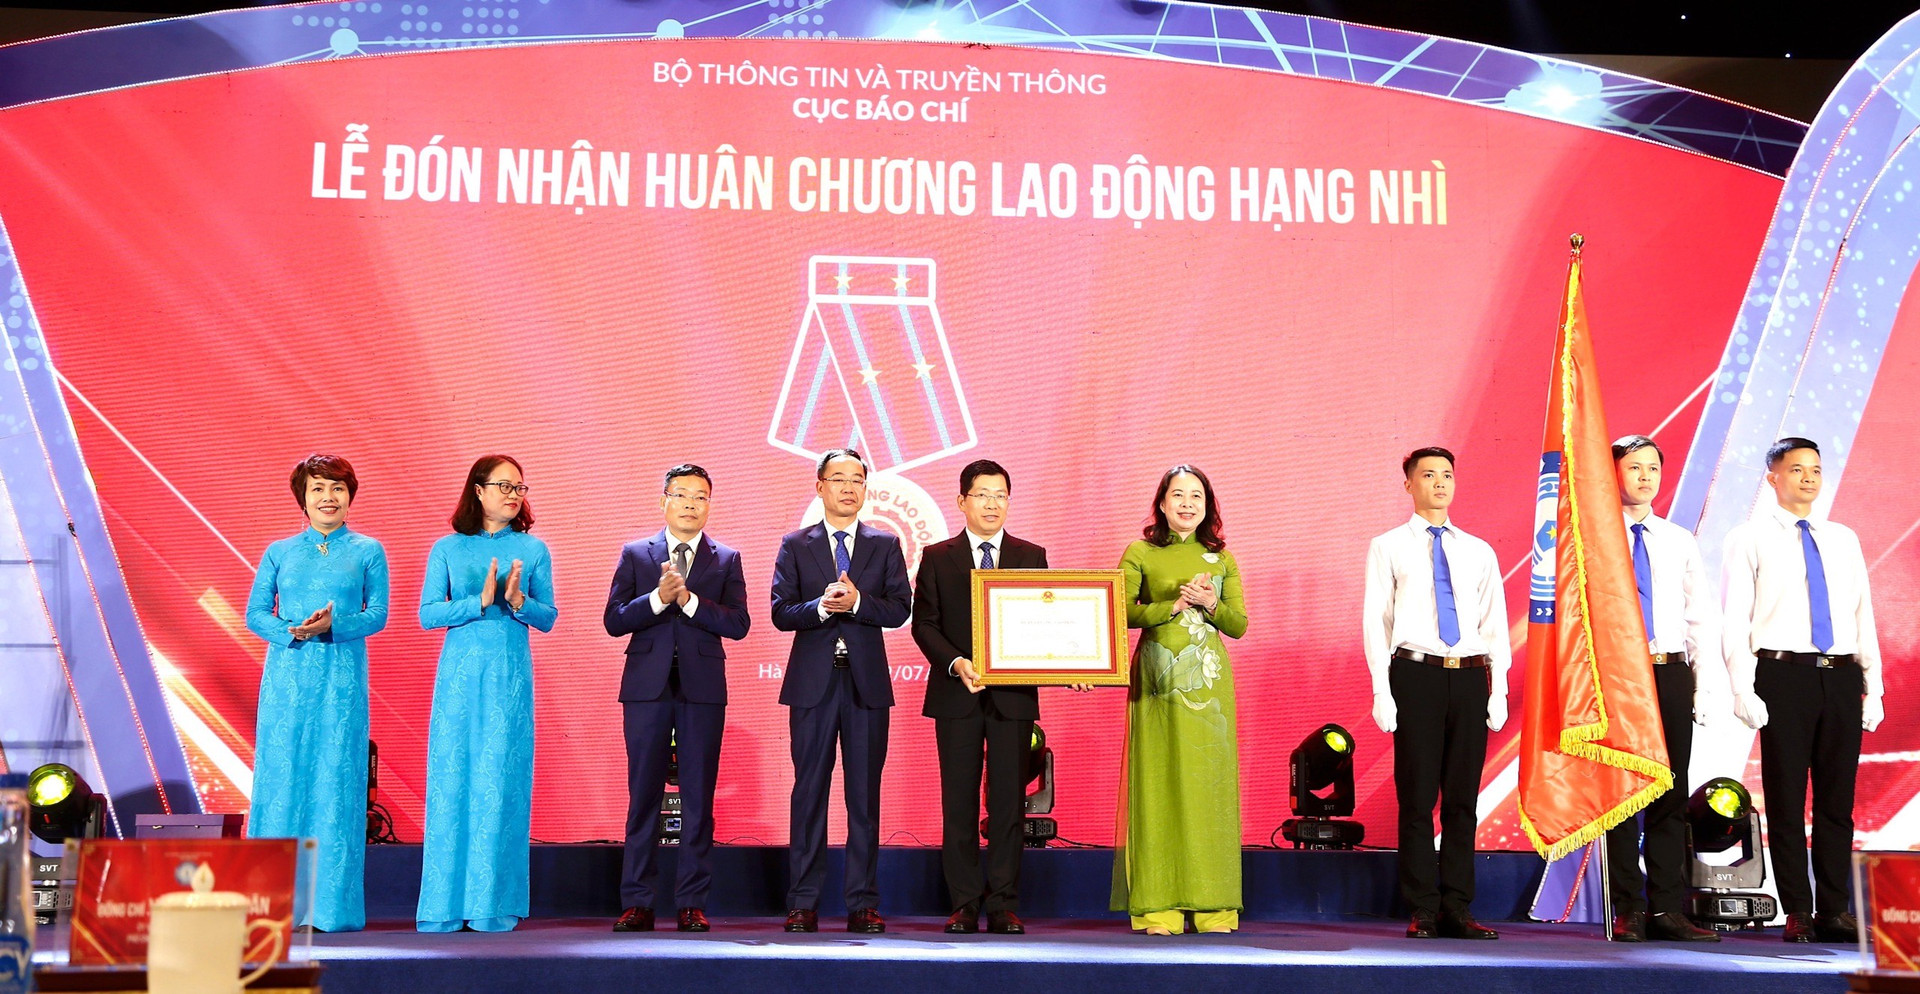 Ủy viên Ban Chấp hành Trung ương Đảng, Phó Chủ tịch nước Võ Thị Ánh Xuân trao Huân chương Lao động hạng Nhì của Chủ tịch nước cho Cục Báo chí.